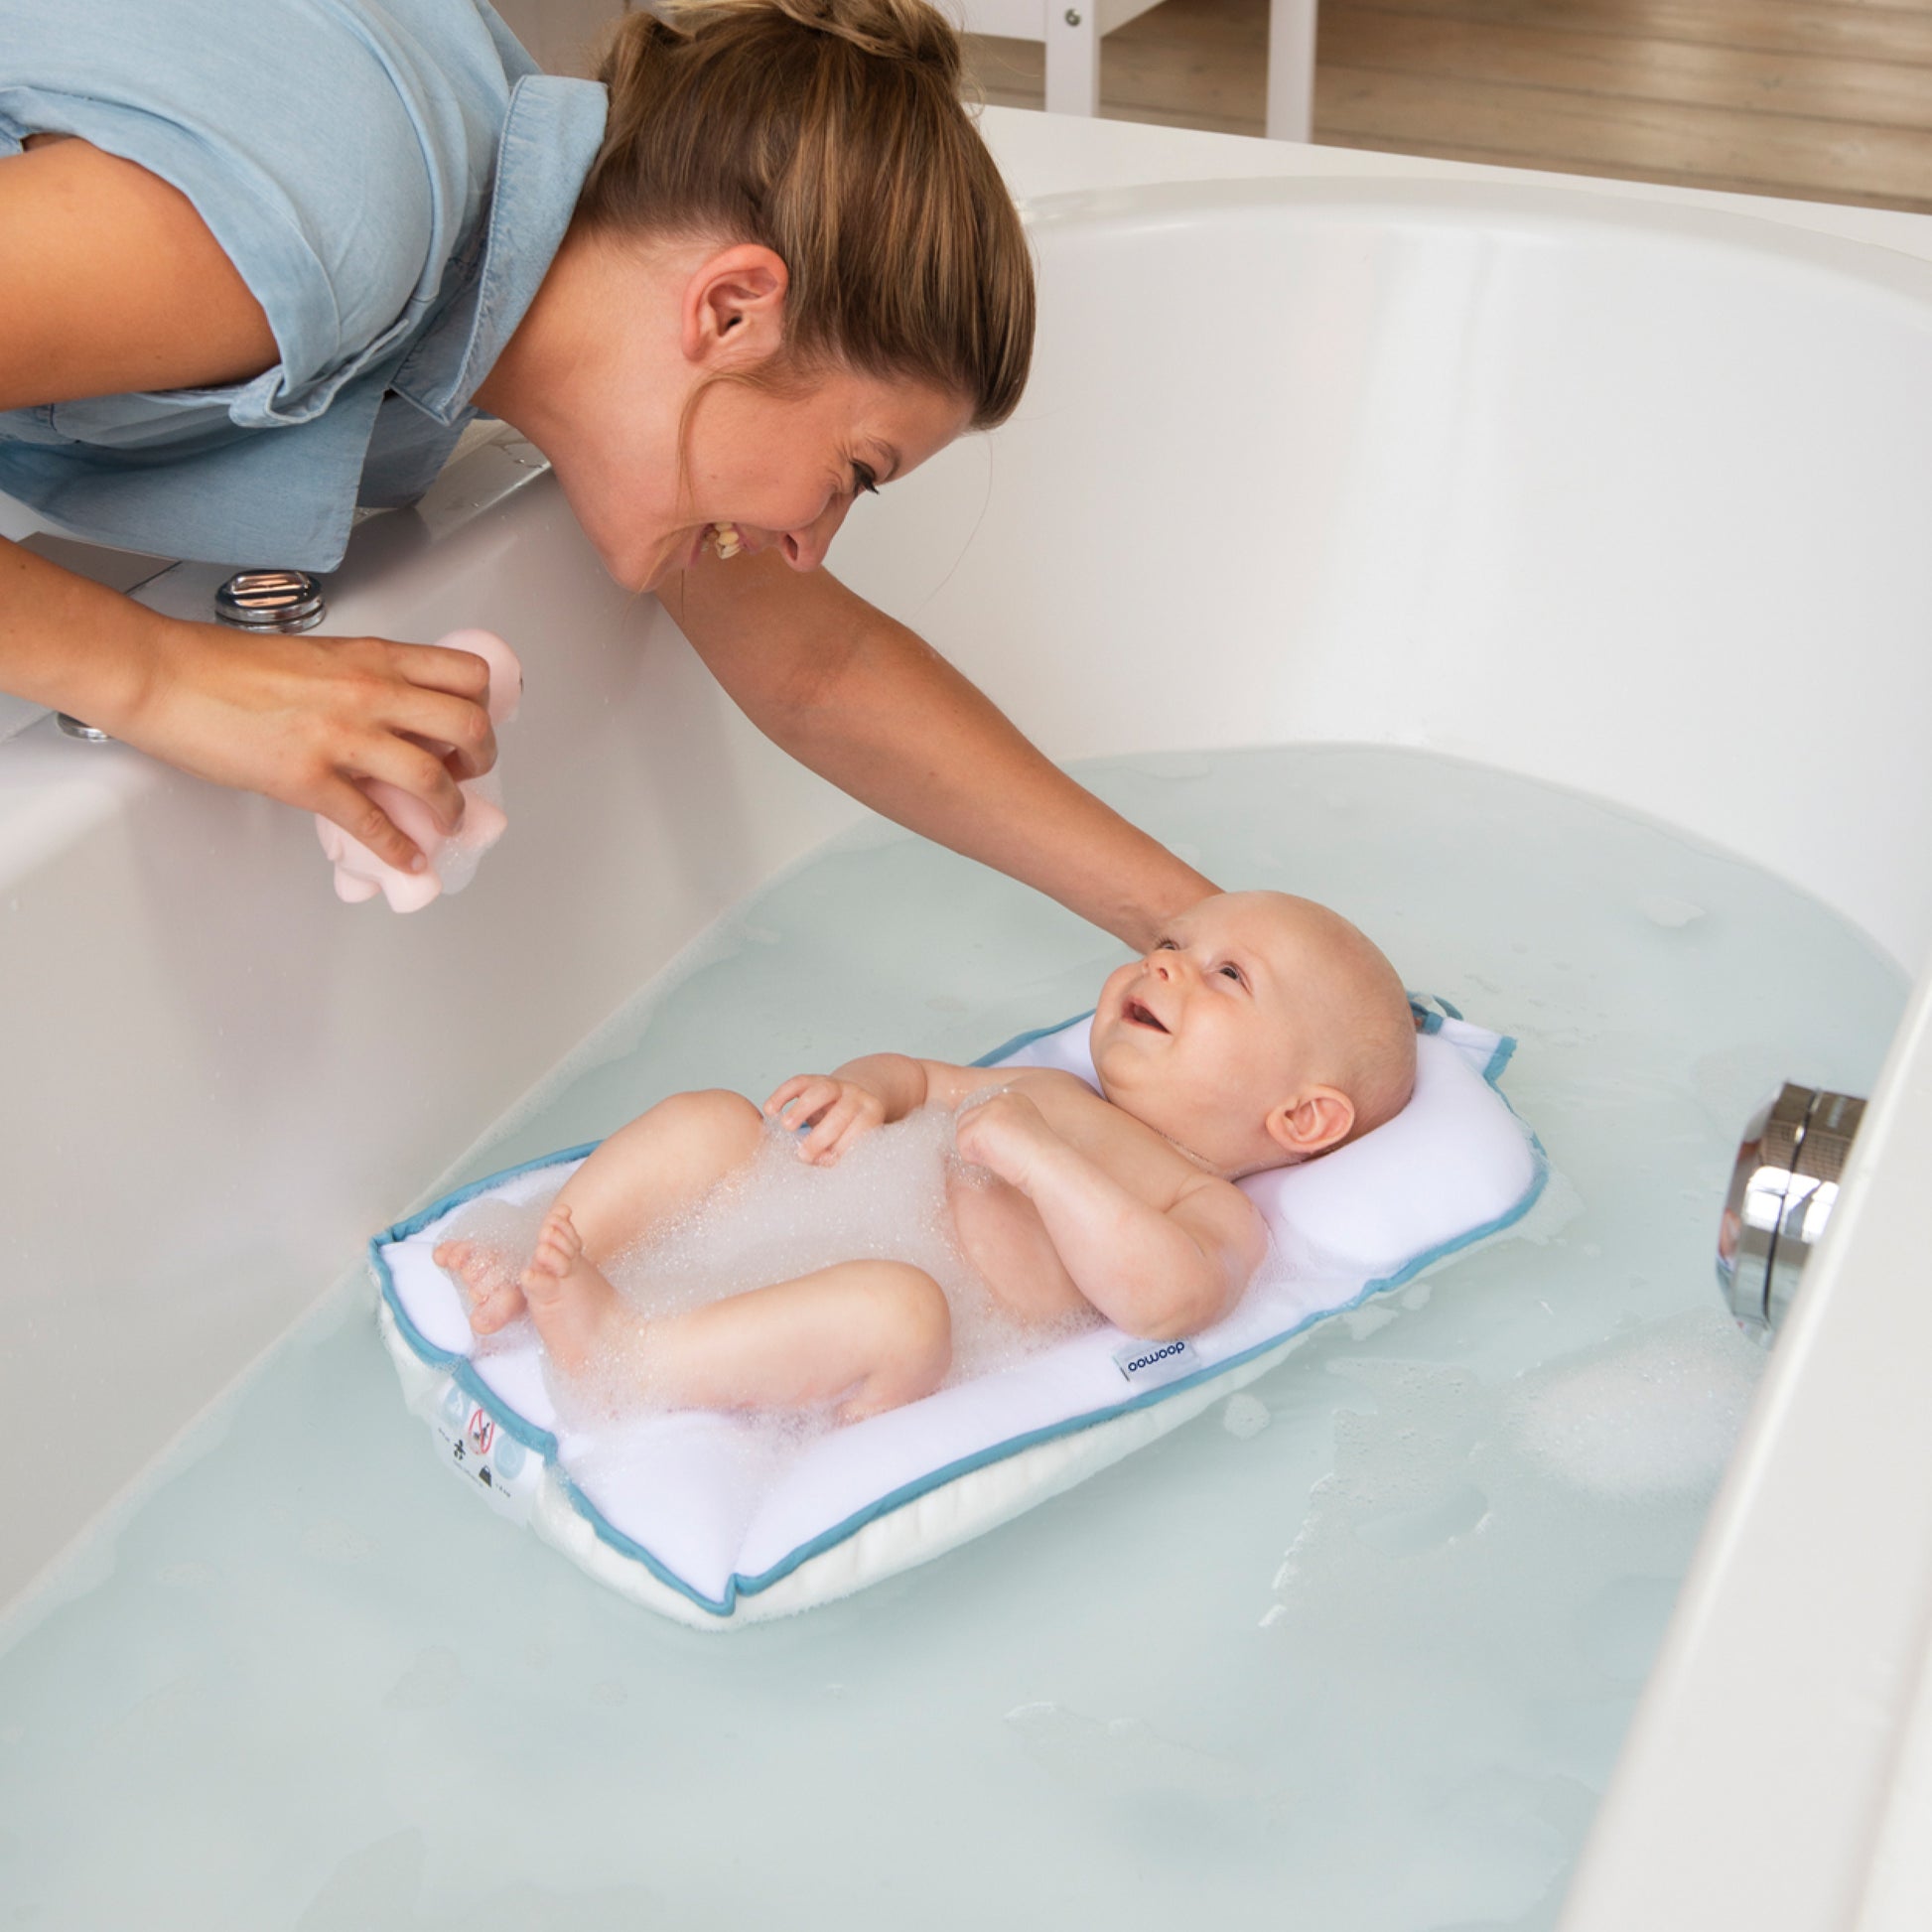 doomoo Easy Bath - Matelas de bain flottant pour baigner votre bébé facilement